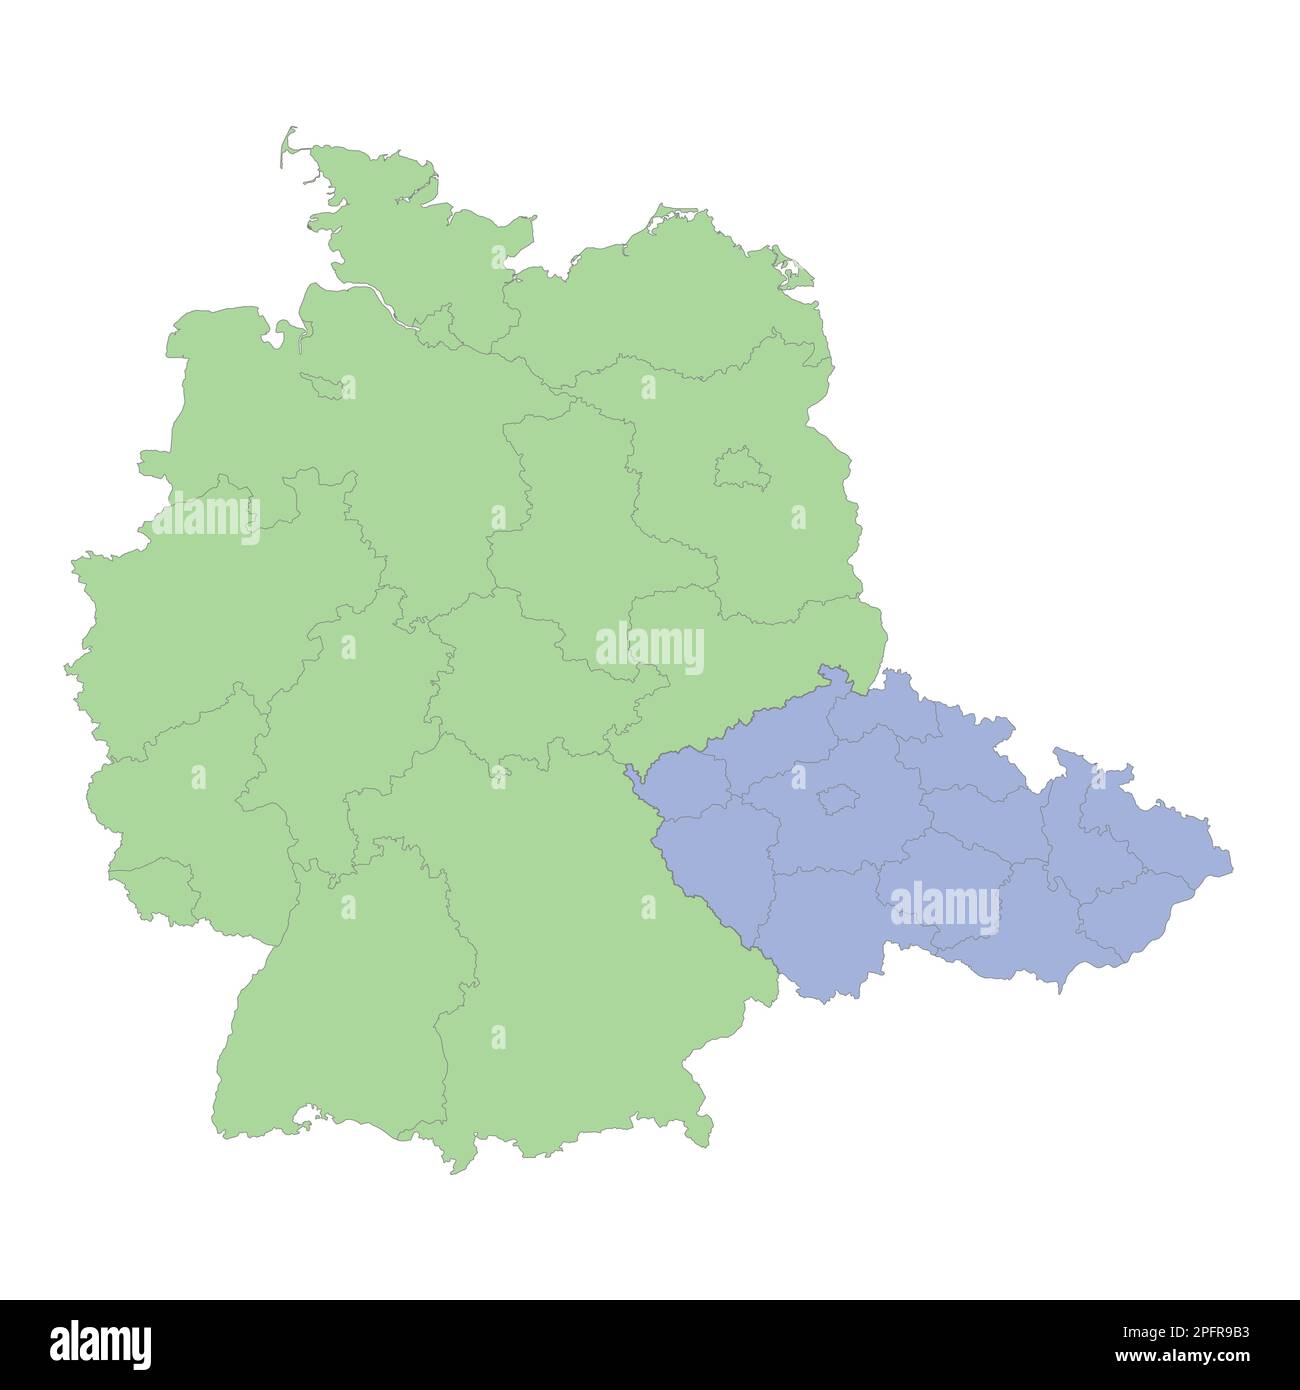 Mappa politica di alta qualità della Germania e della Repubblica Ceca con i confini delle regioni o province. Illustrazione vettoriale Illustrazione Vettoriale